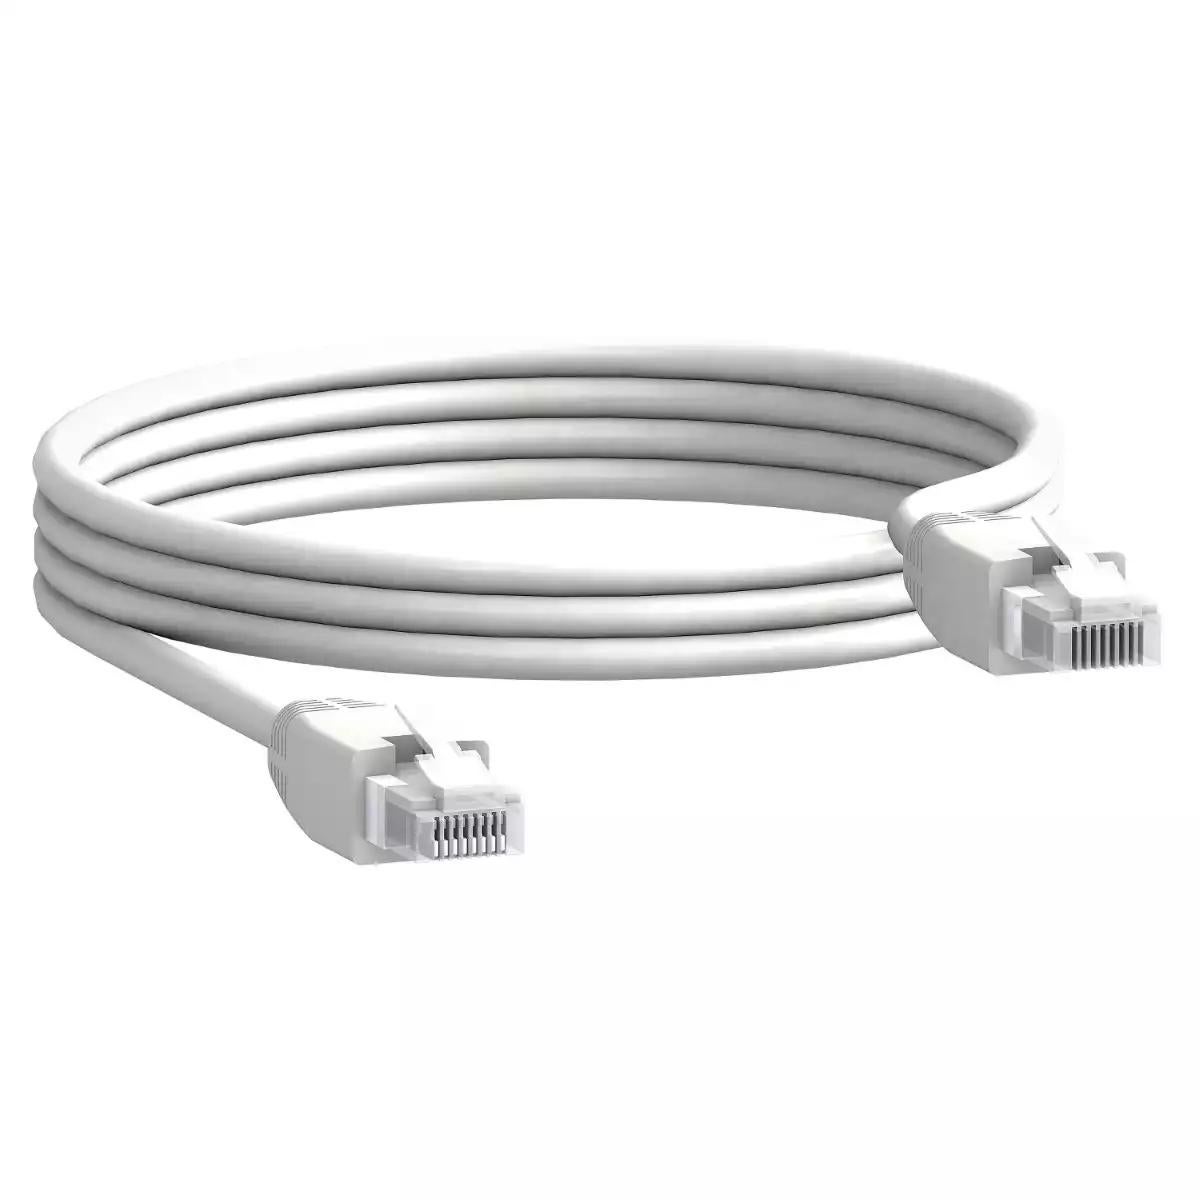 Communication cable, 2 x RJ45 male connectors, 2 m length, set of 5 parts